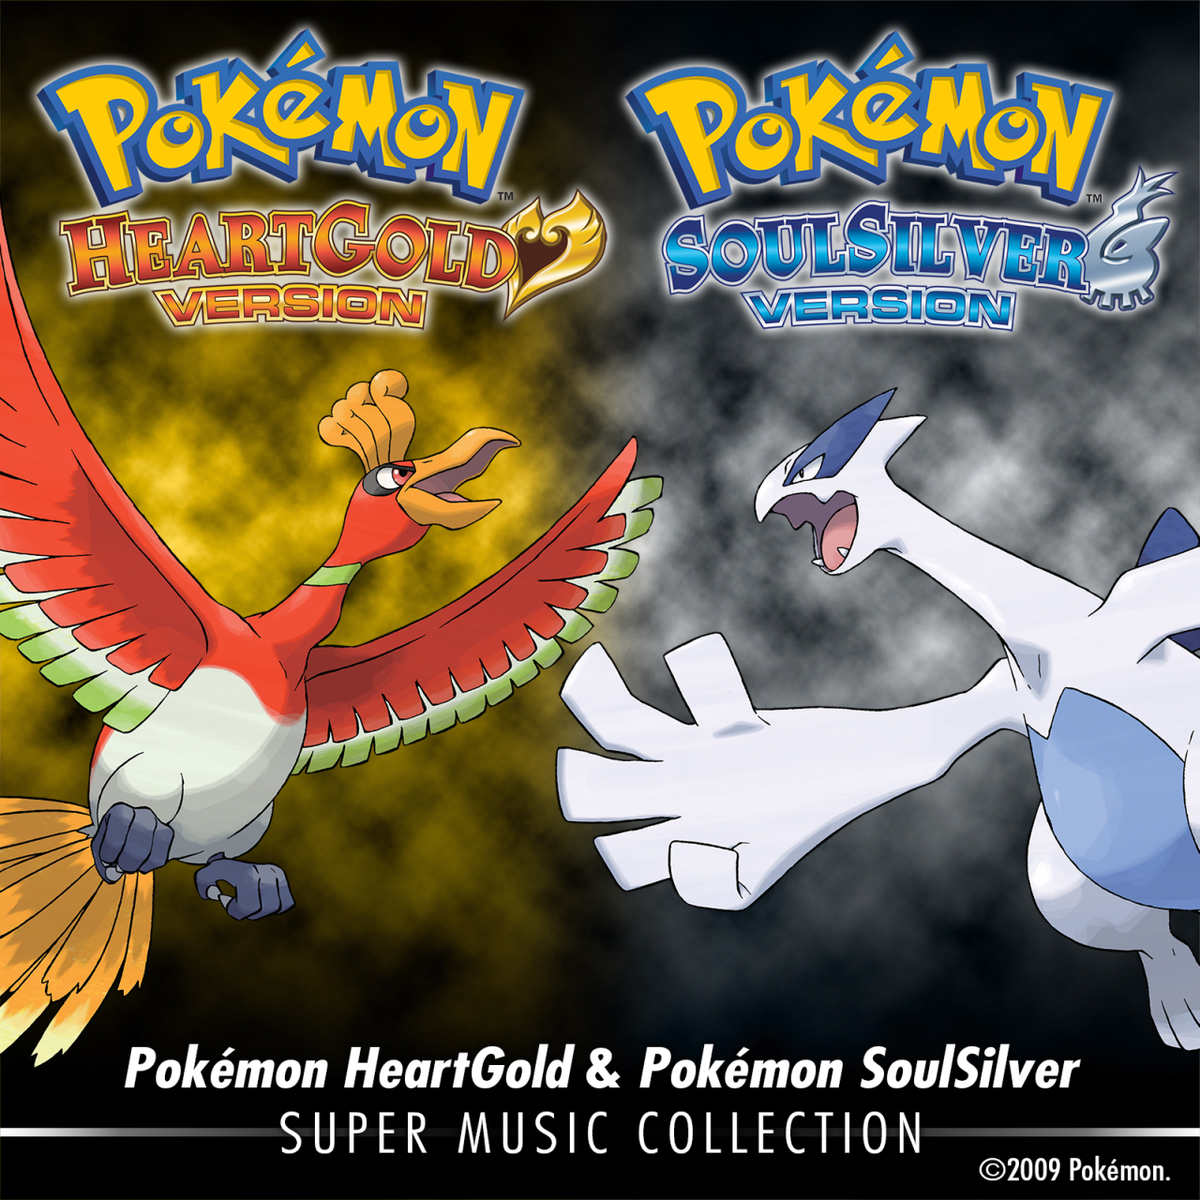 Pokémon HeartGold & Pokémon SoulSilver: Super Music